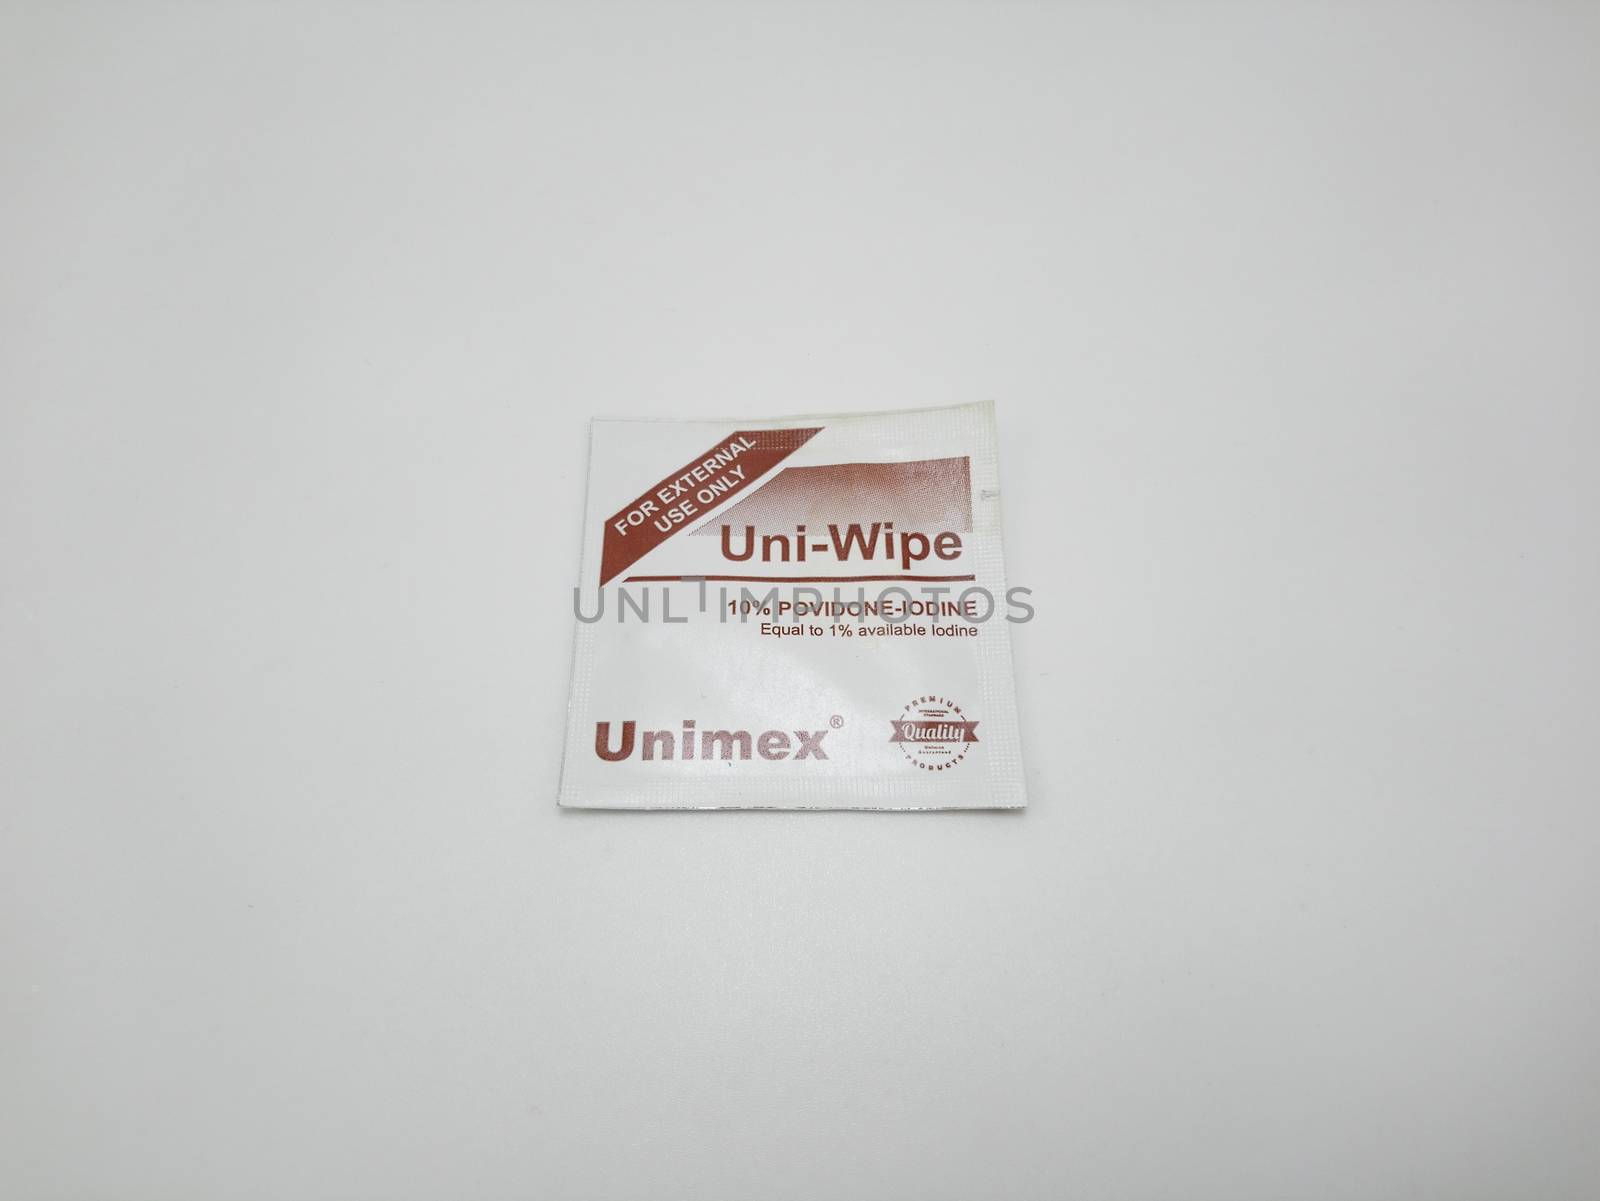 Unimex uni wipe povidone iodine alcohol wipes in Manila, Philipp by imwaltersy